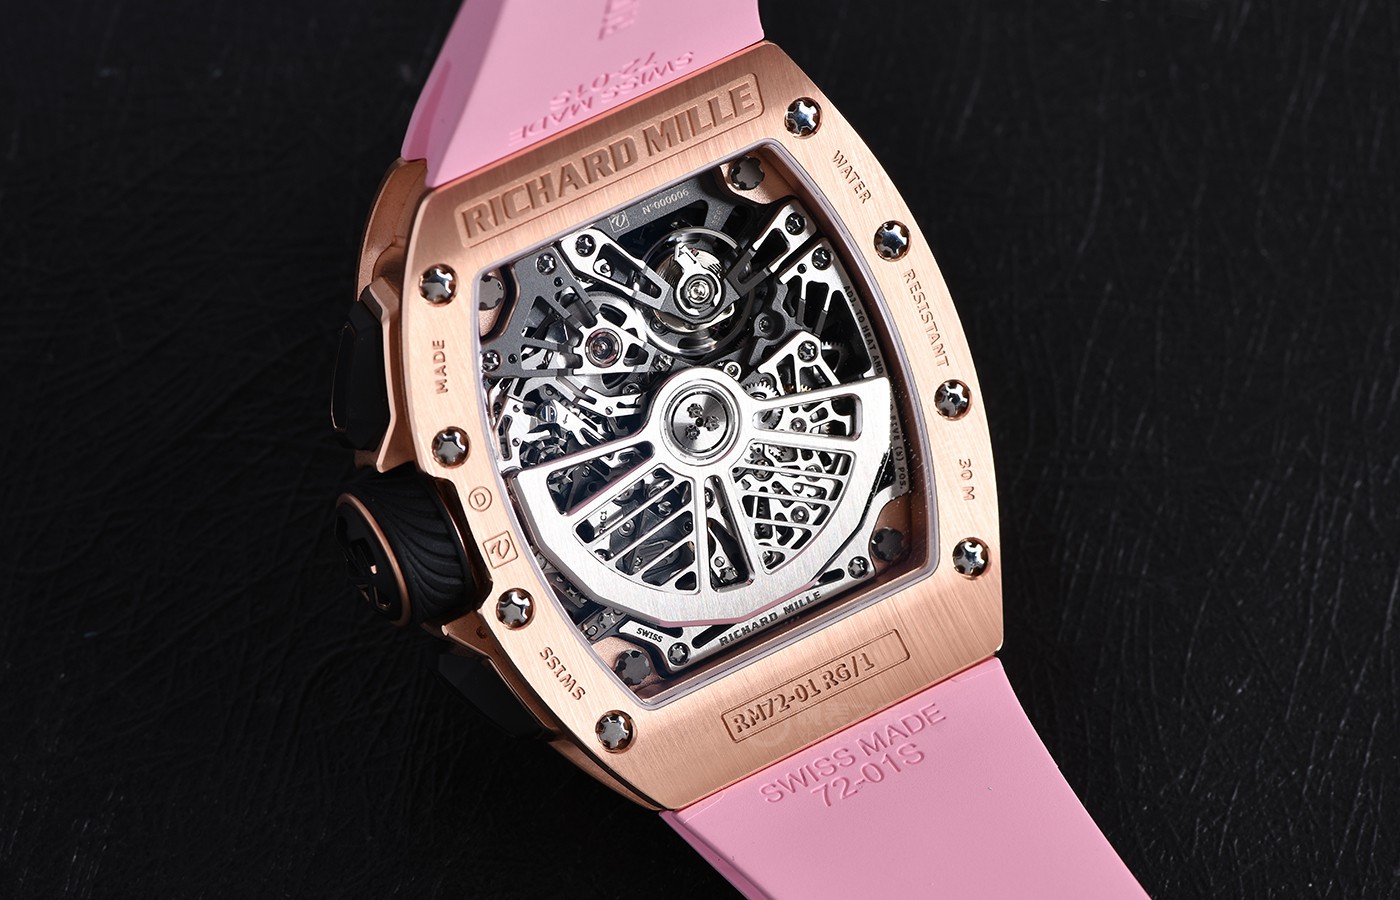 里查德米尔RM 72-01计时码表 来自高级腕表的粉色少女心